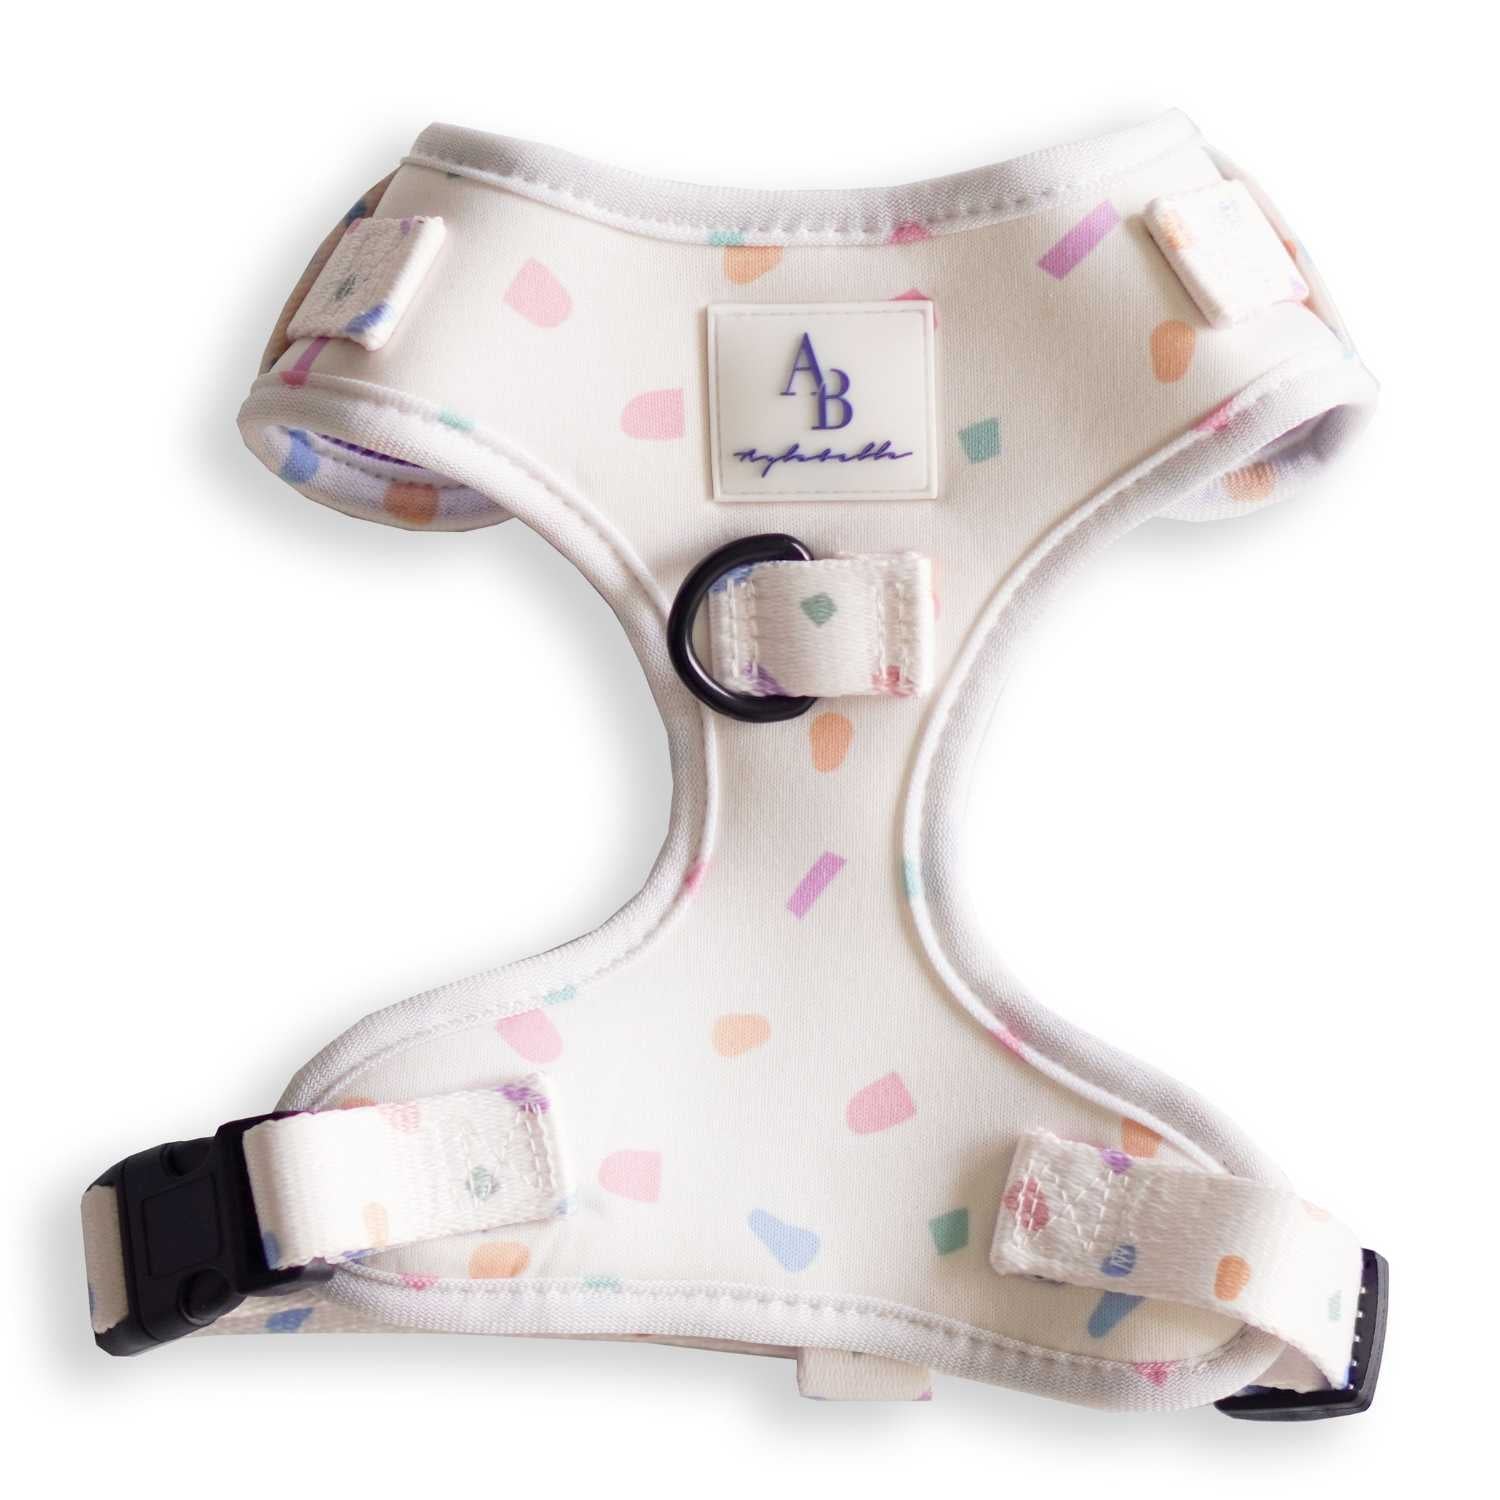 Aylabella Co. - Confetti Dreams Harness - Dog Accessories (5 Sizes)